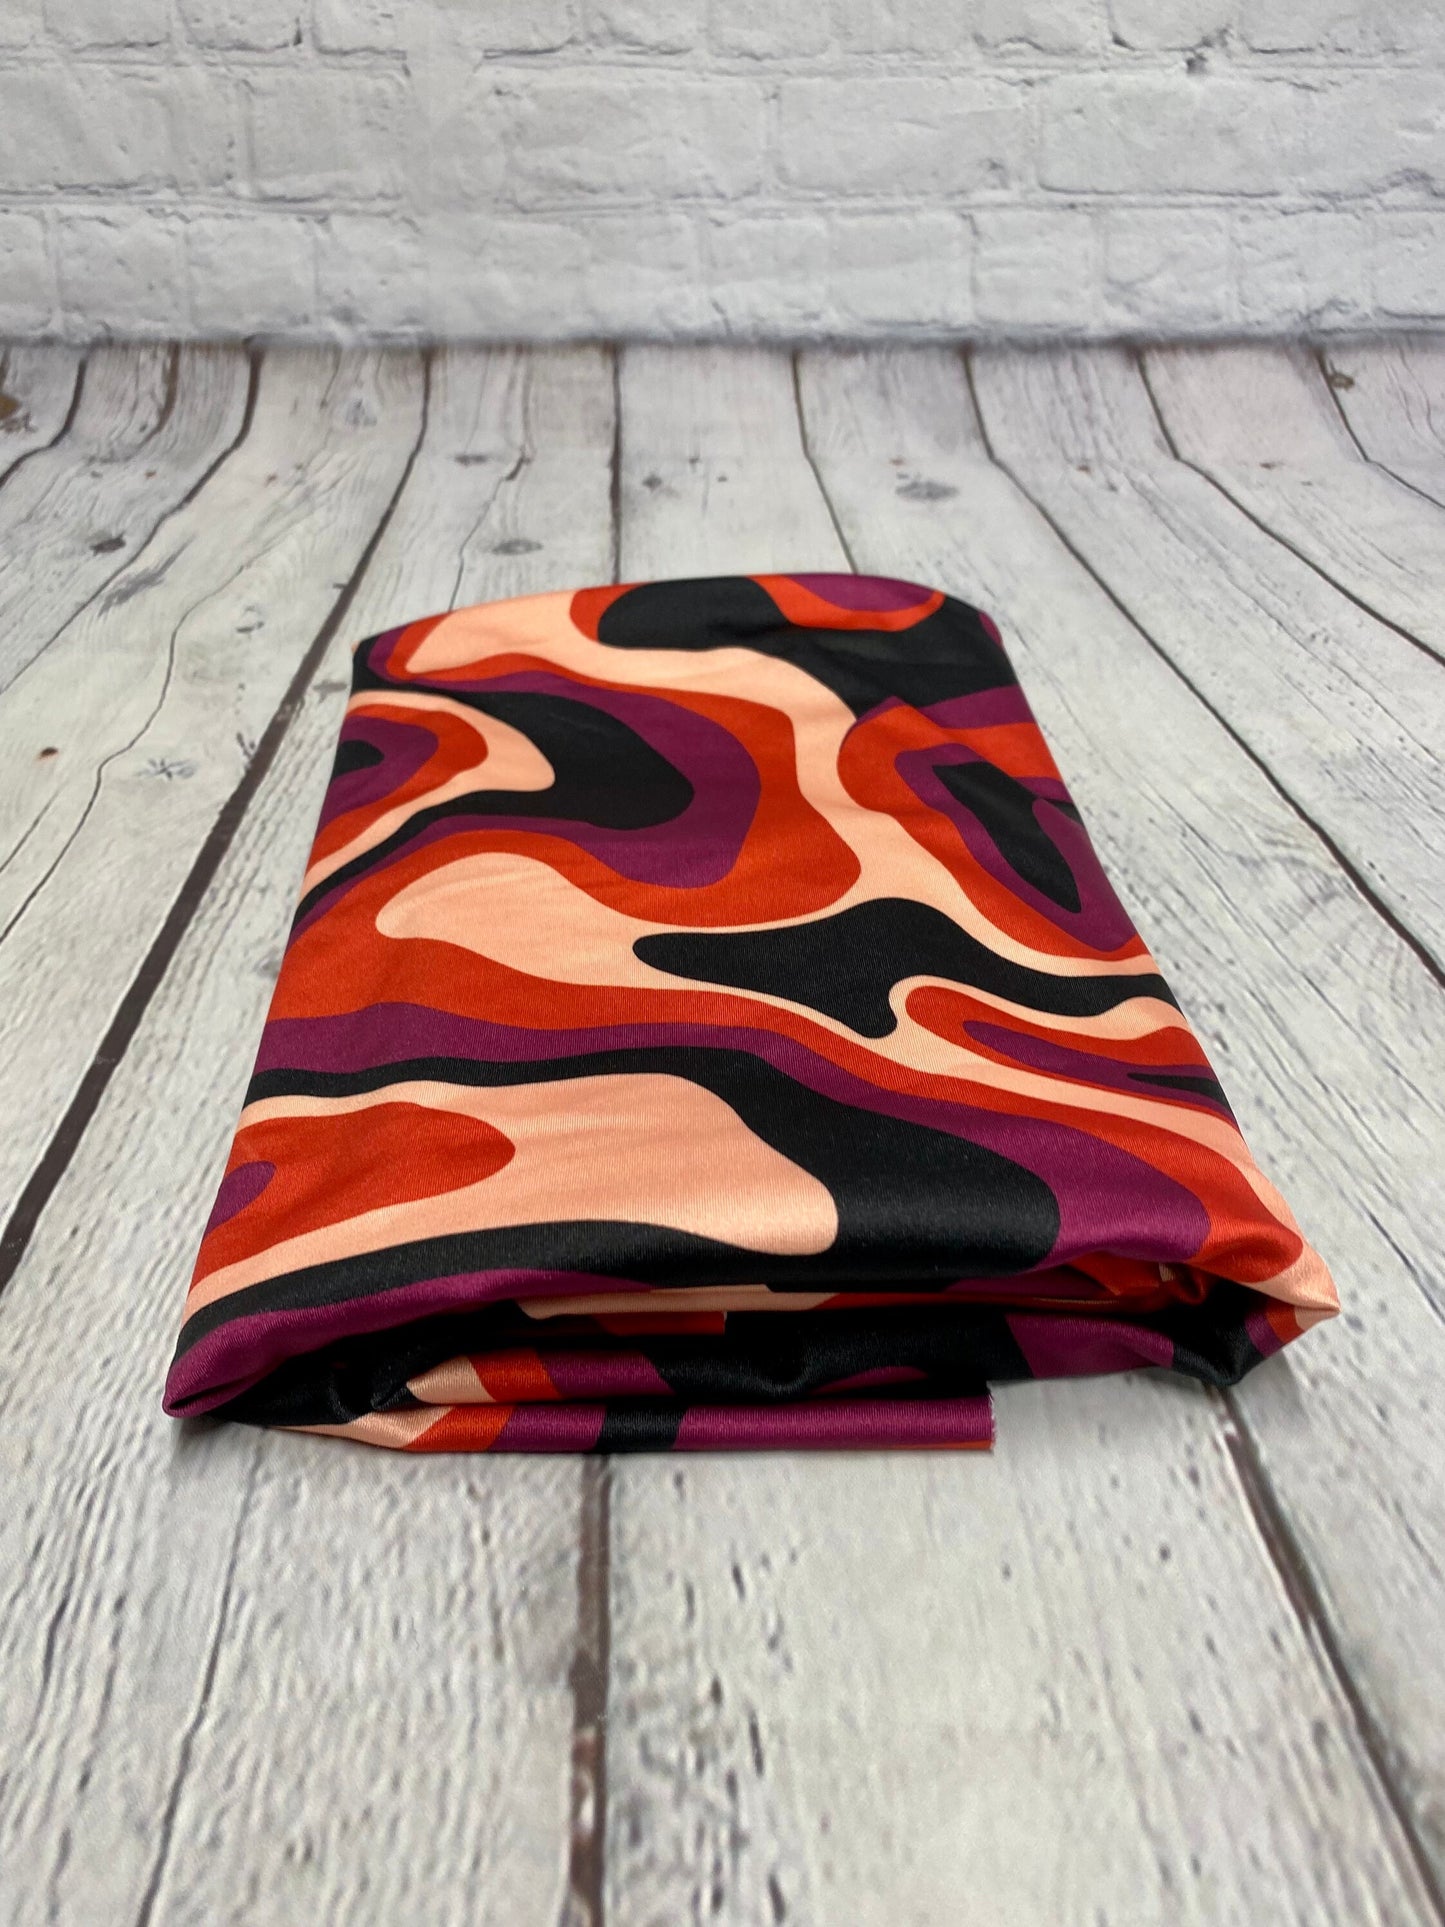 4 Way Stretch Print Nylon Spandex Fabric By The Yard Tricot Swim Wear Bikini Active Wear Wave Hazy Groovy Red Print 280 GSM